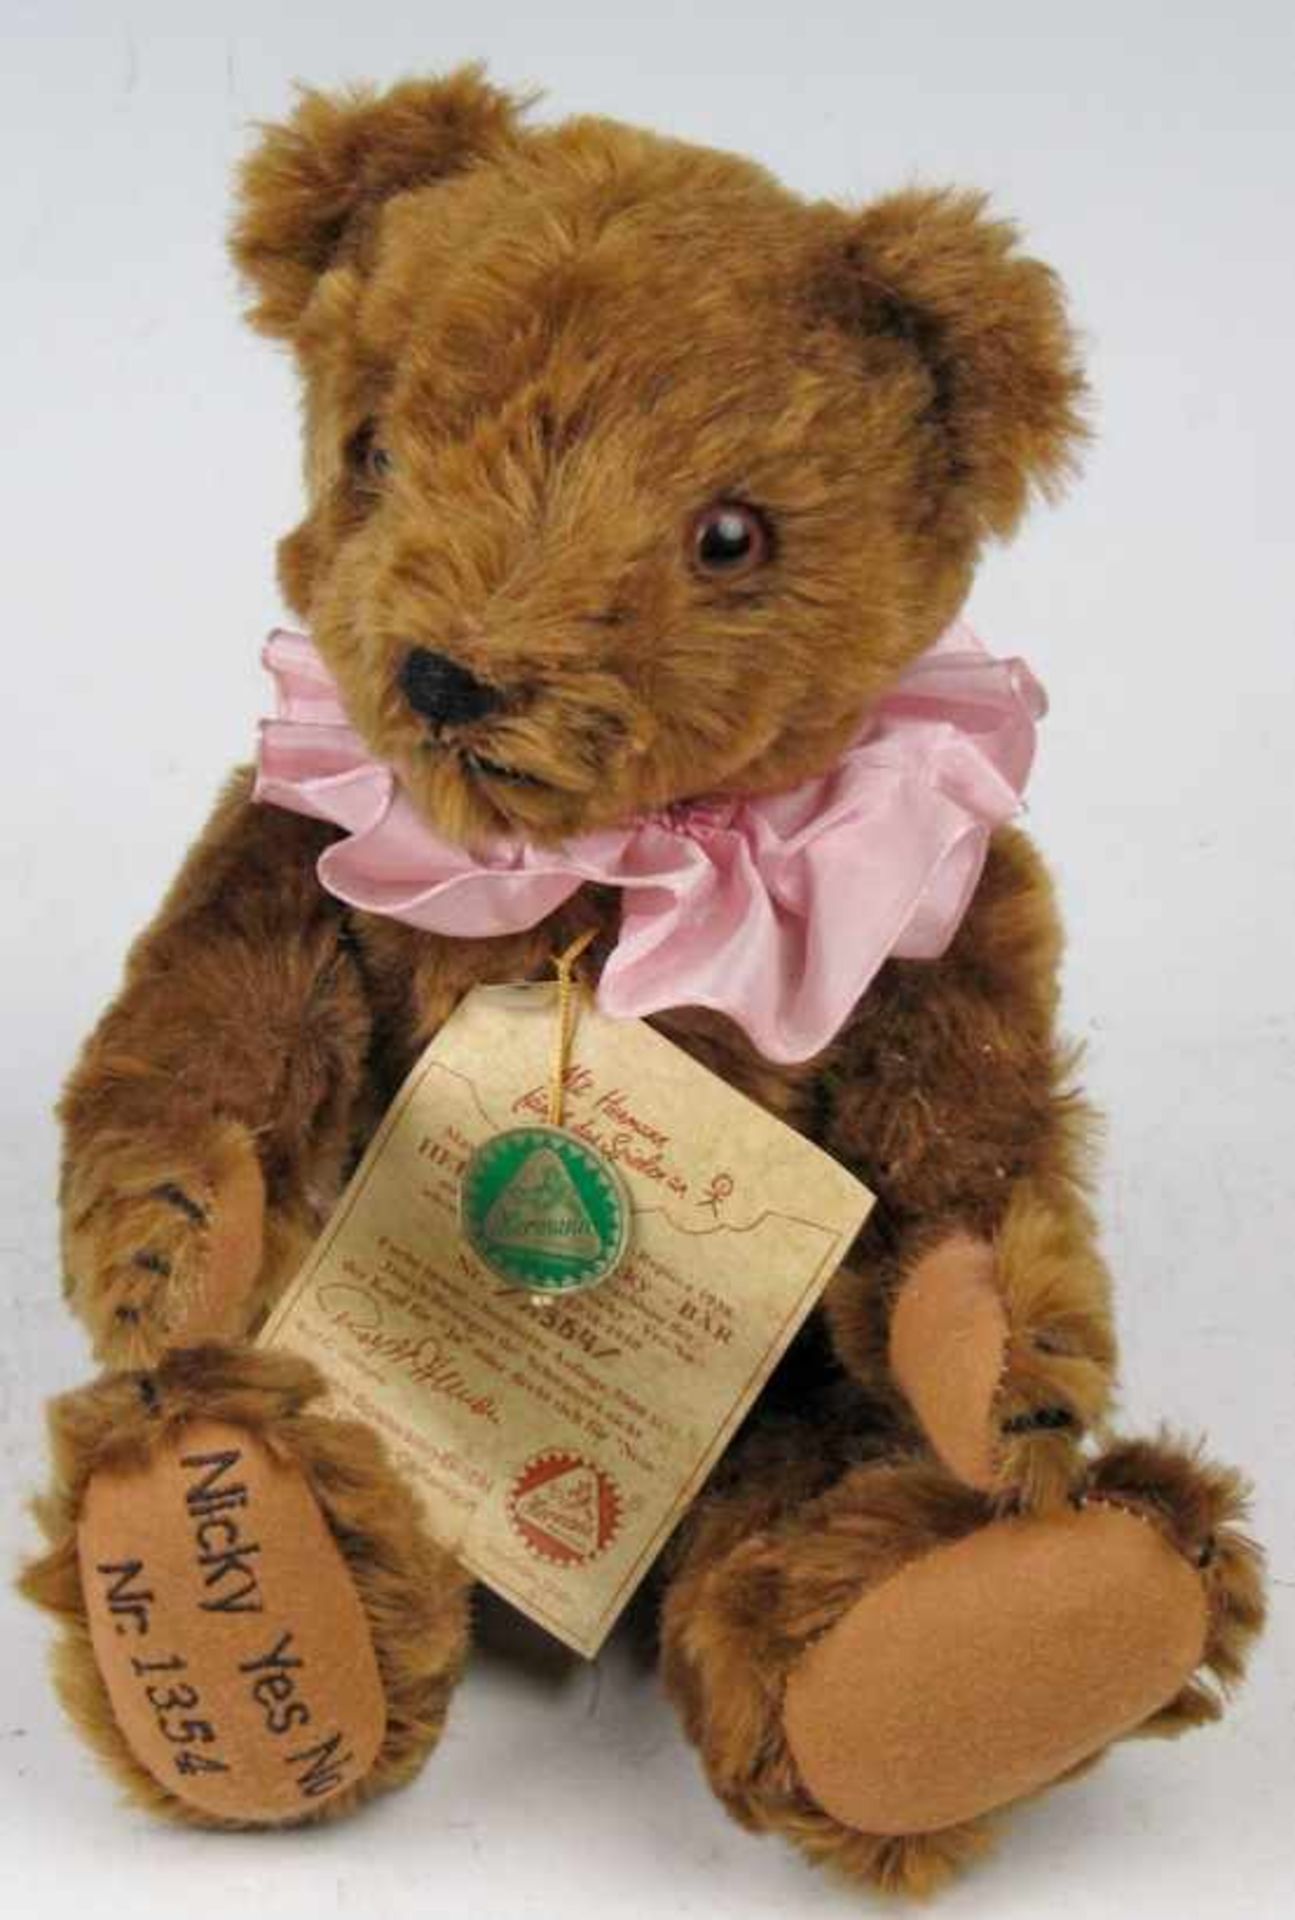 Zwei Teddybären.Fa. Hermann, Coburg. a) Moving Head Bär antique, Ex. 97/1000. Mit amerikanischem - Image 2 of 2